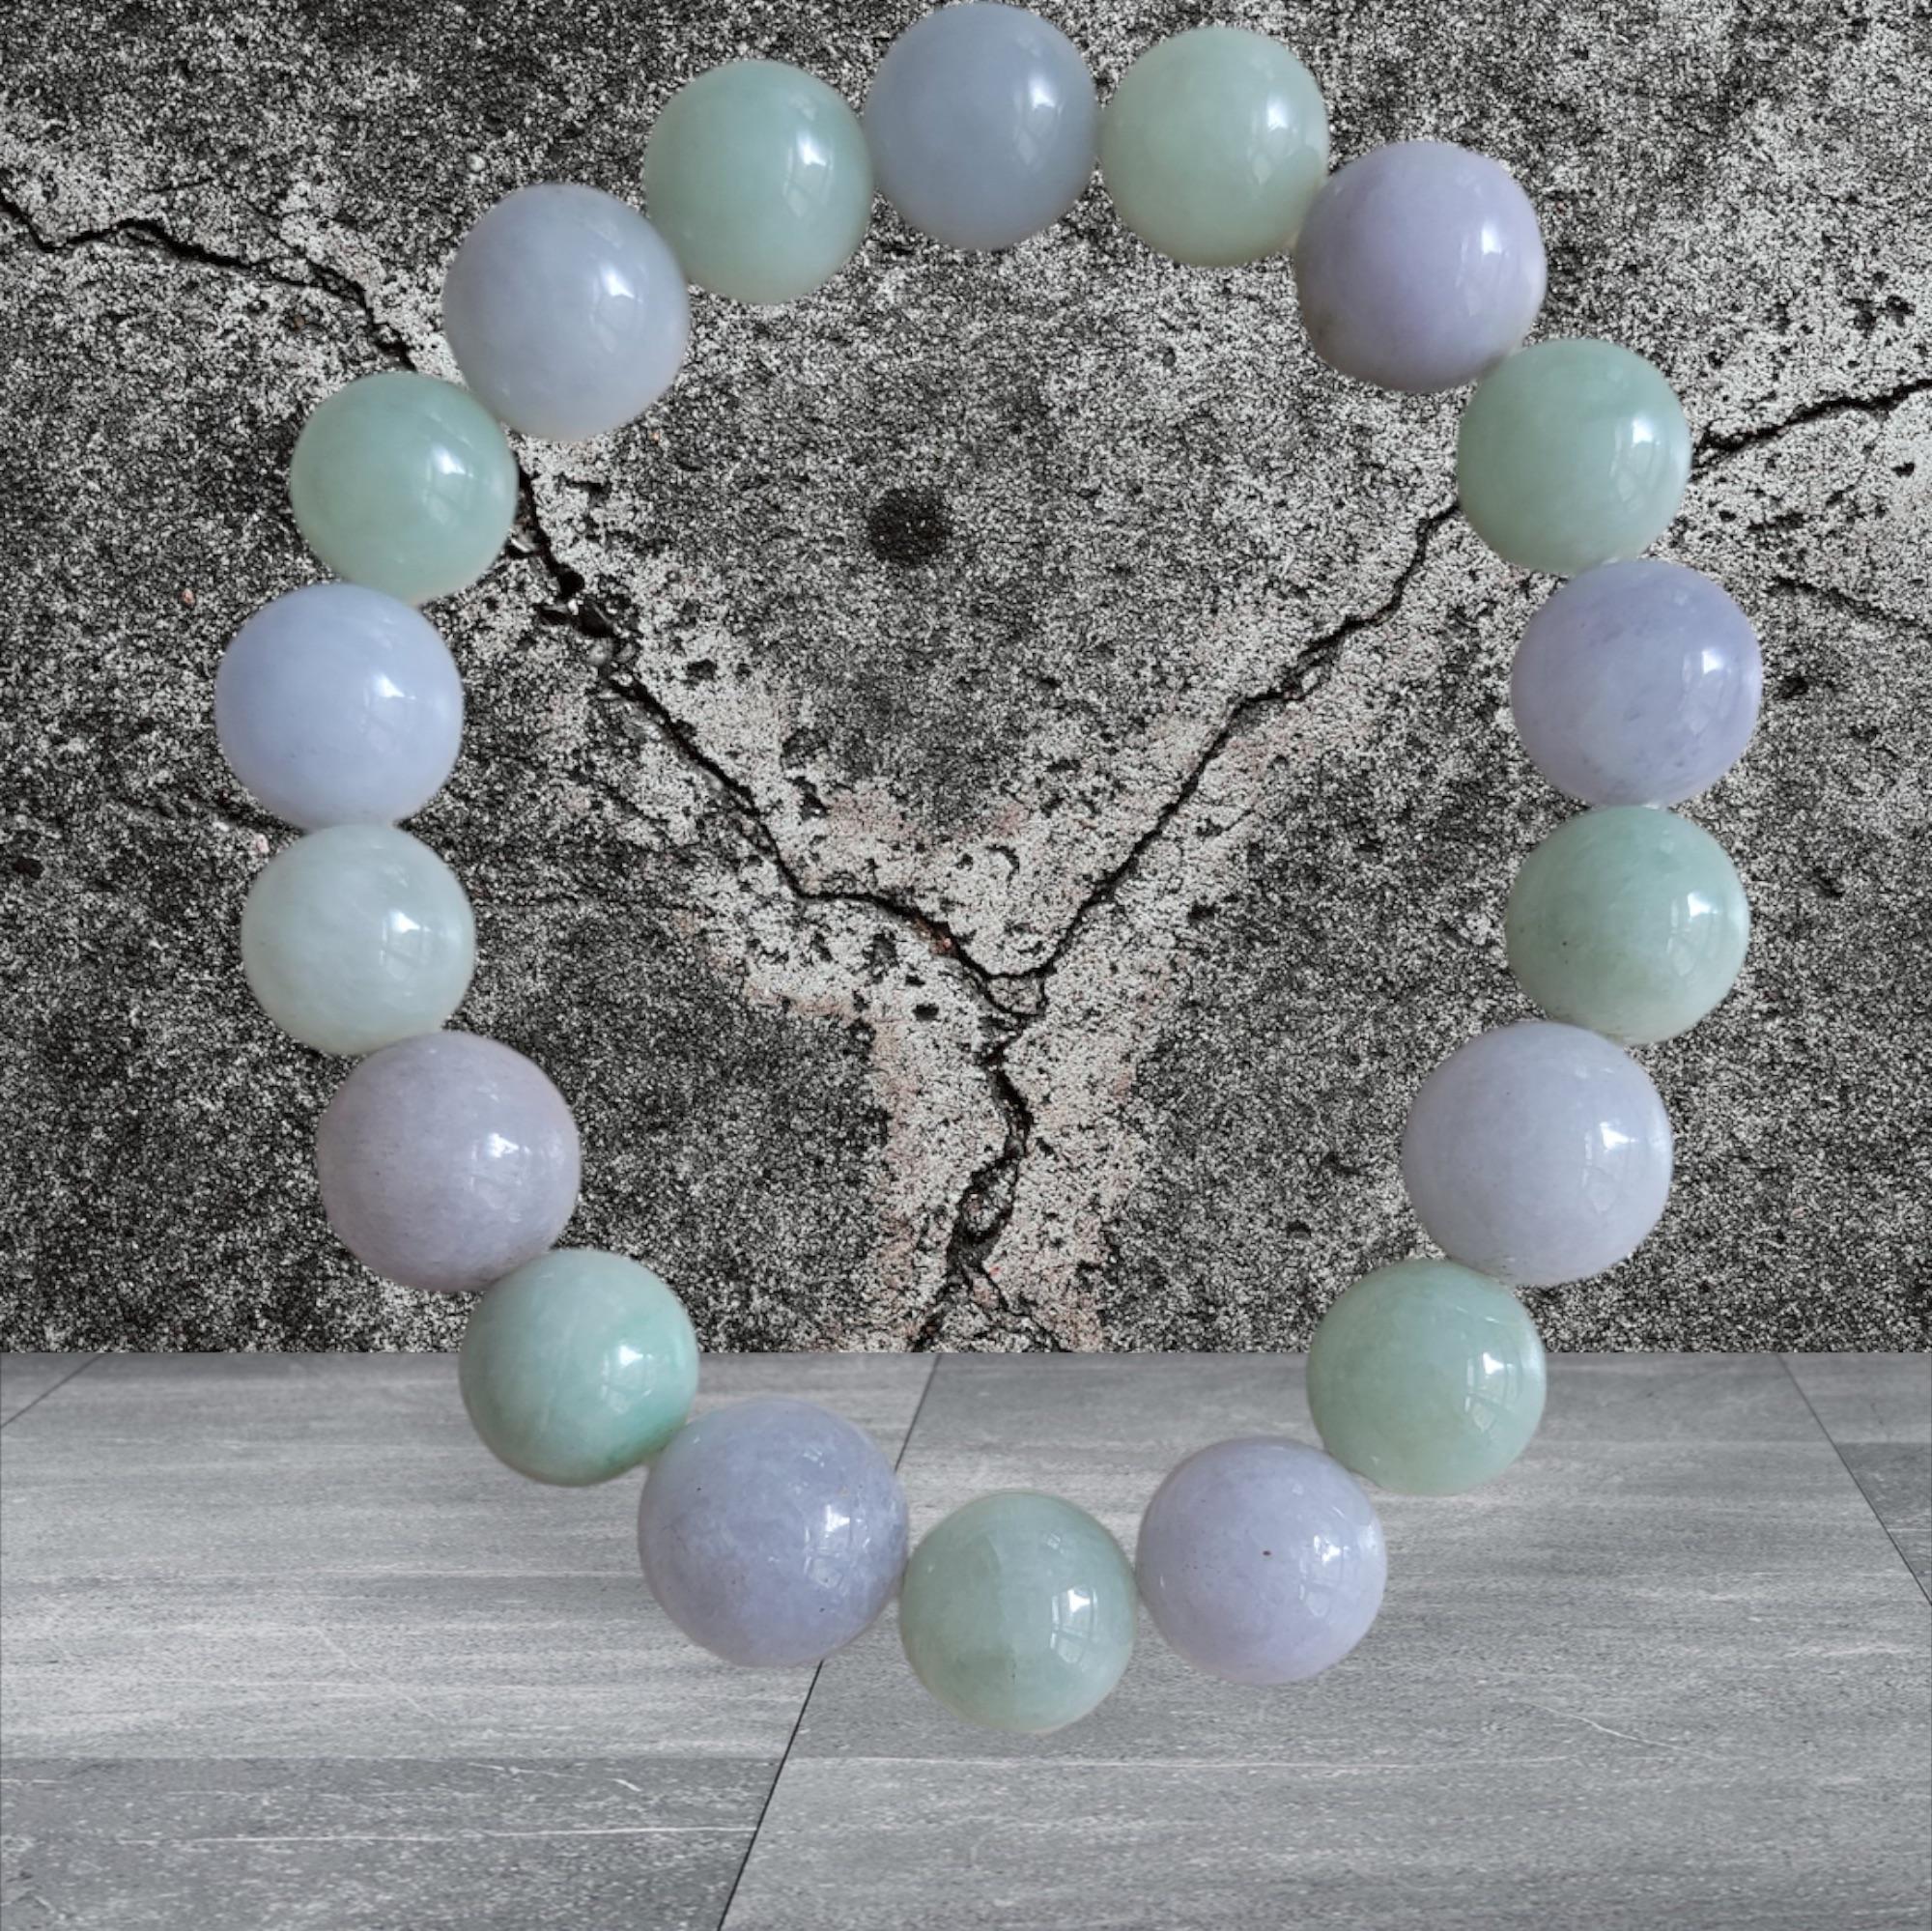 Bracelet de perles de jadéite birmane vert impérial et violet lavande (10-11mm chaque x 18 perles) 07002

10-11mm chacune, 18 perles de jadéite verte et lavande parfaitement calibrées. Certaines des teintes naturelles les plus rares de jadéite A, de